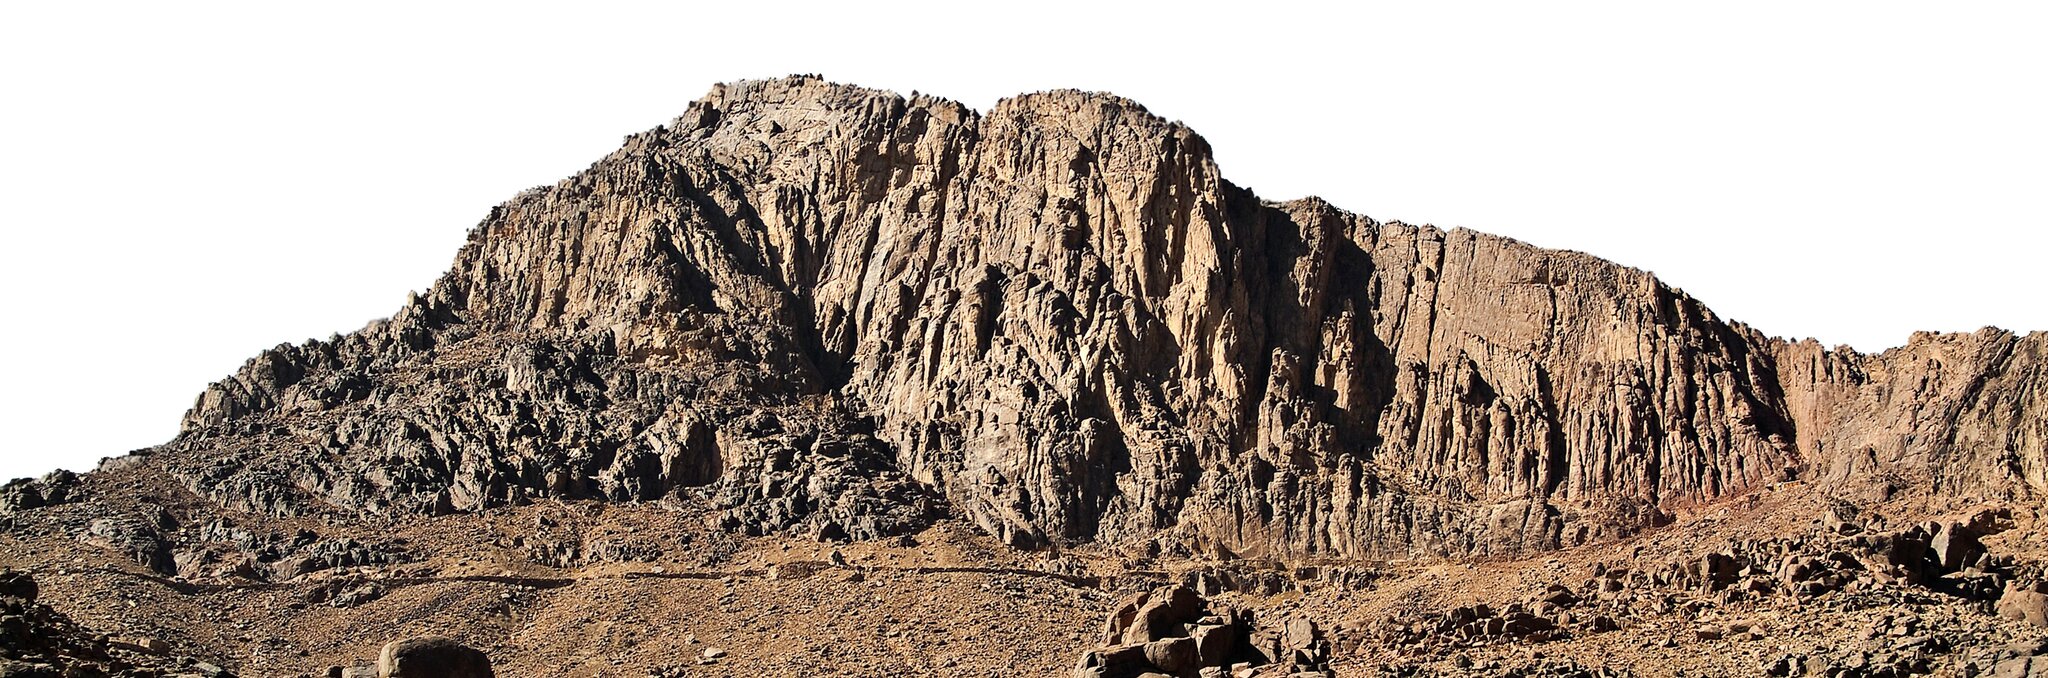 Góra Synaj, na której Jahwe przekazał Mojżeszowi dekalog Góra Synaj, na której Jahwe przekazał Mojżeszowi dekalog Źródło: Studio31, Wikimedia Commons, licencja: CC BY-SA 3.0.